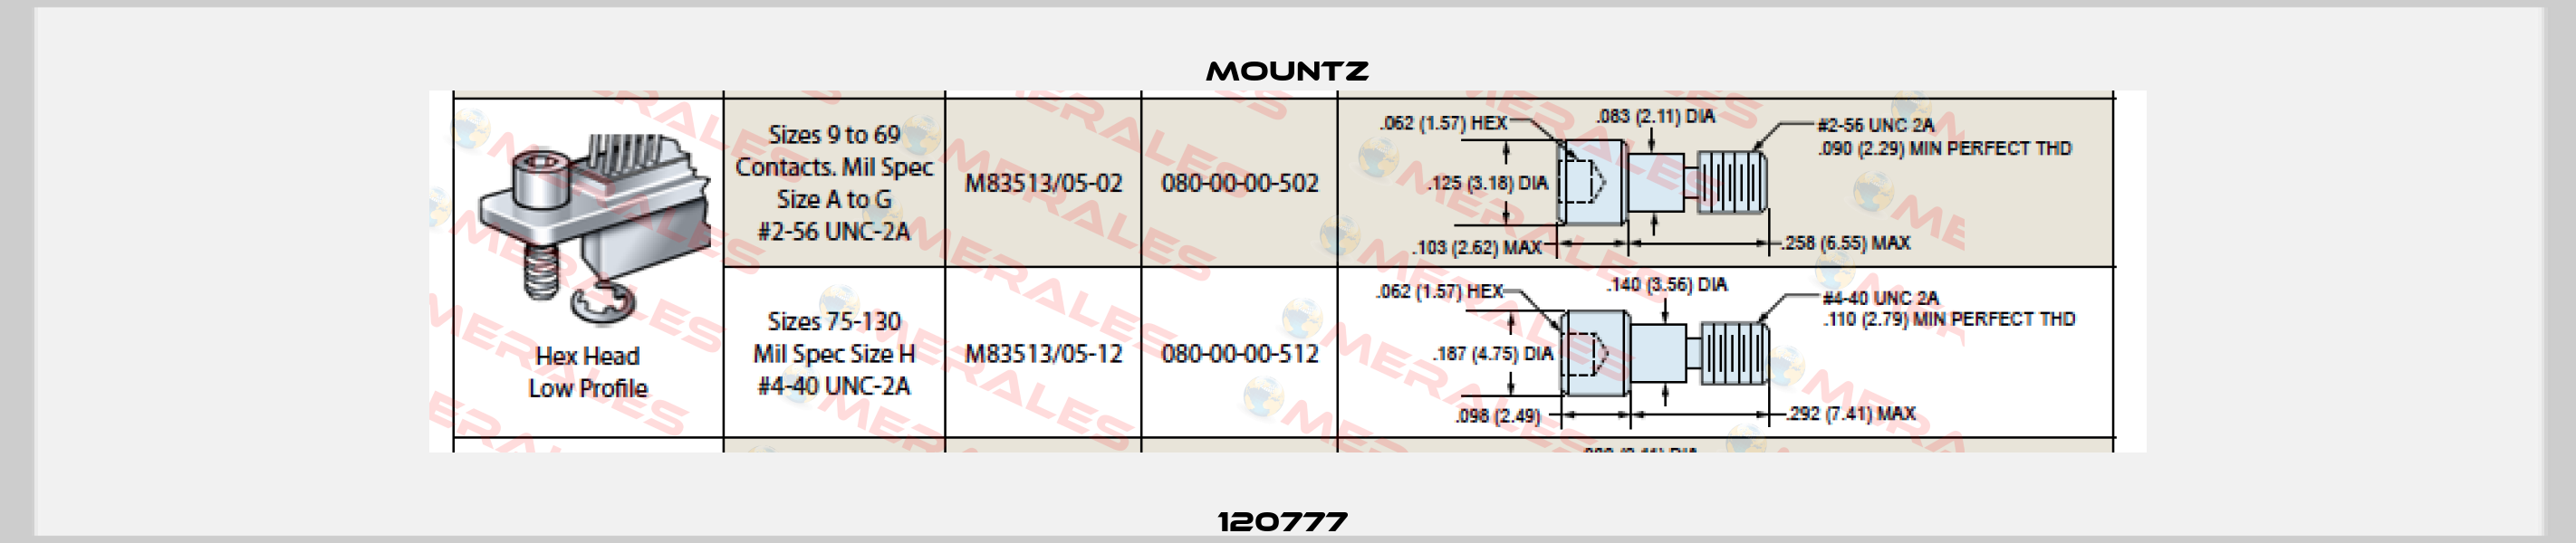 120777  Mountz